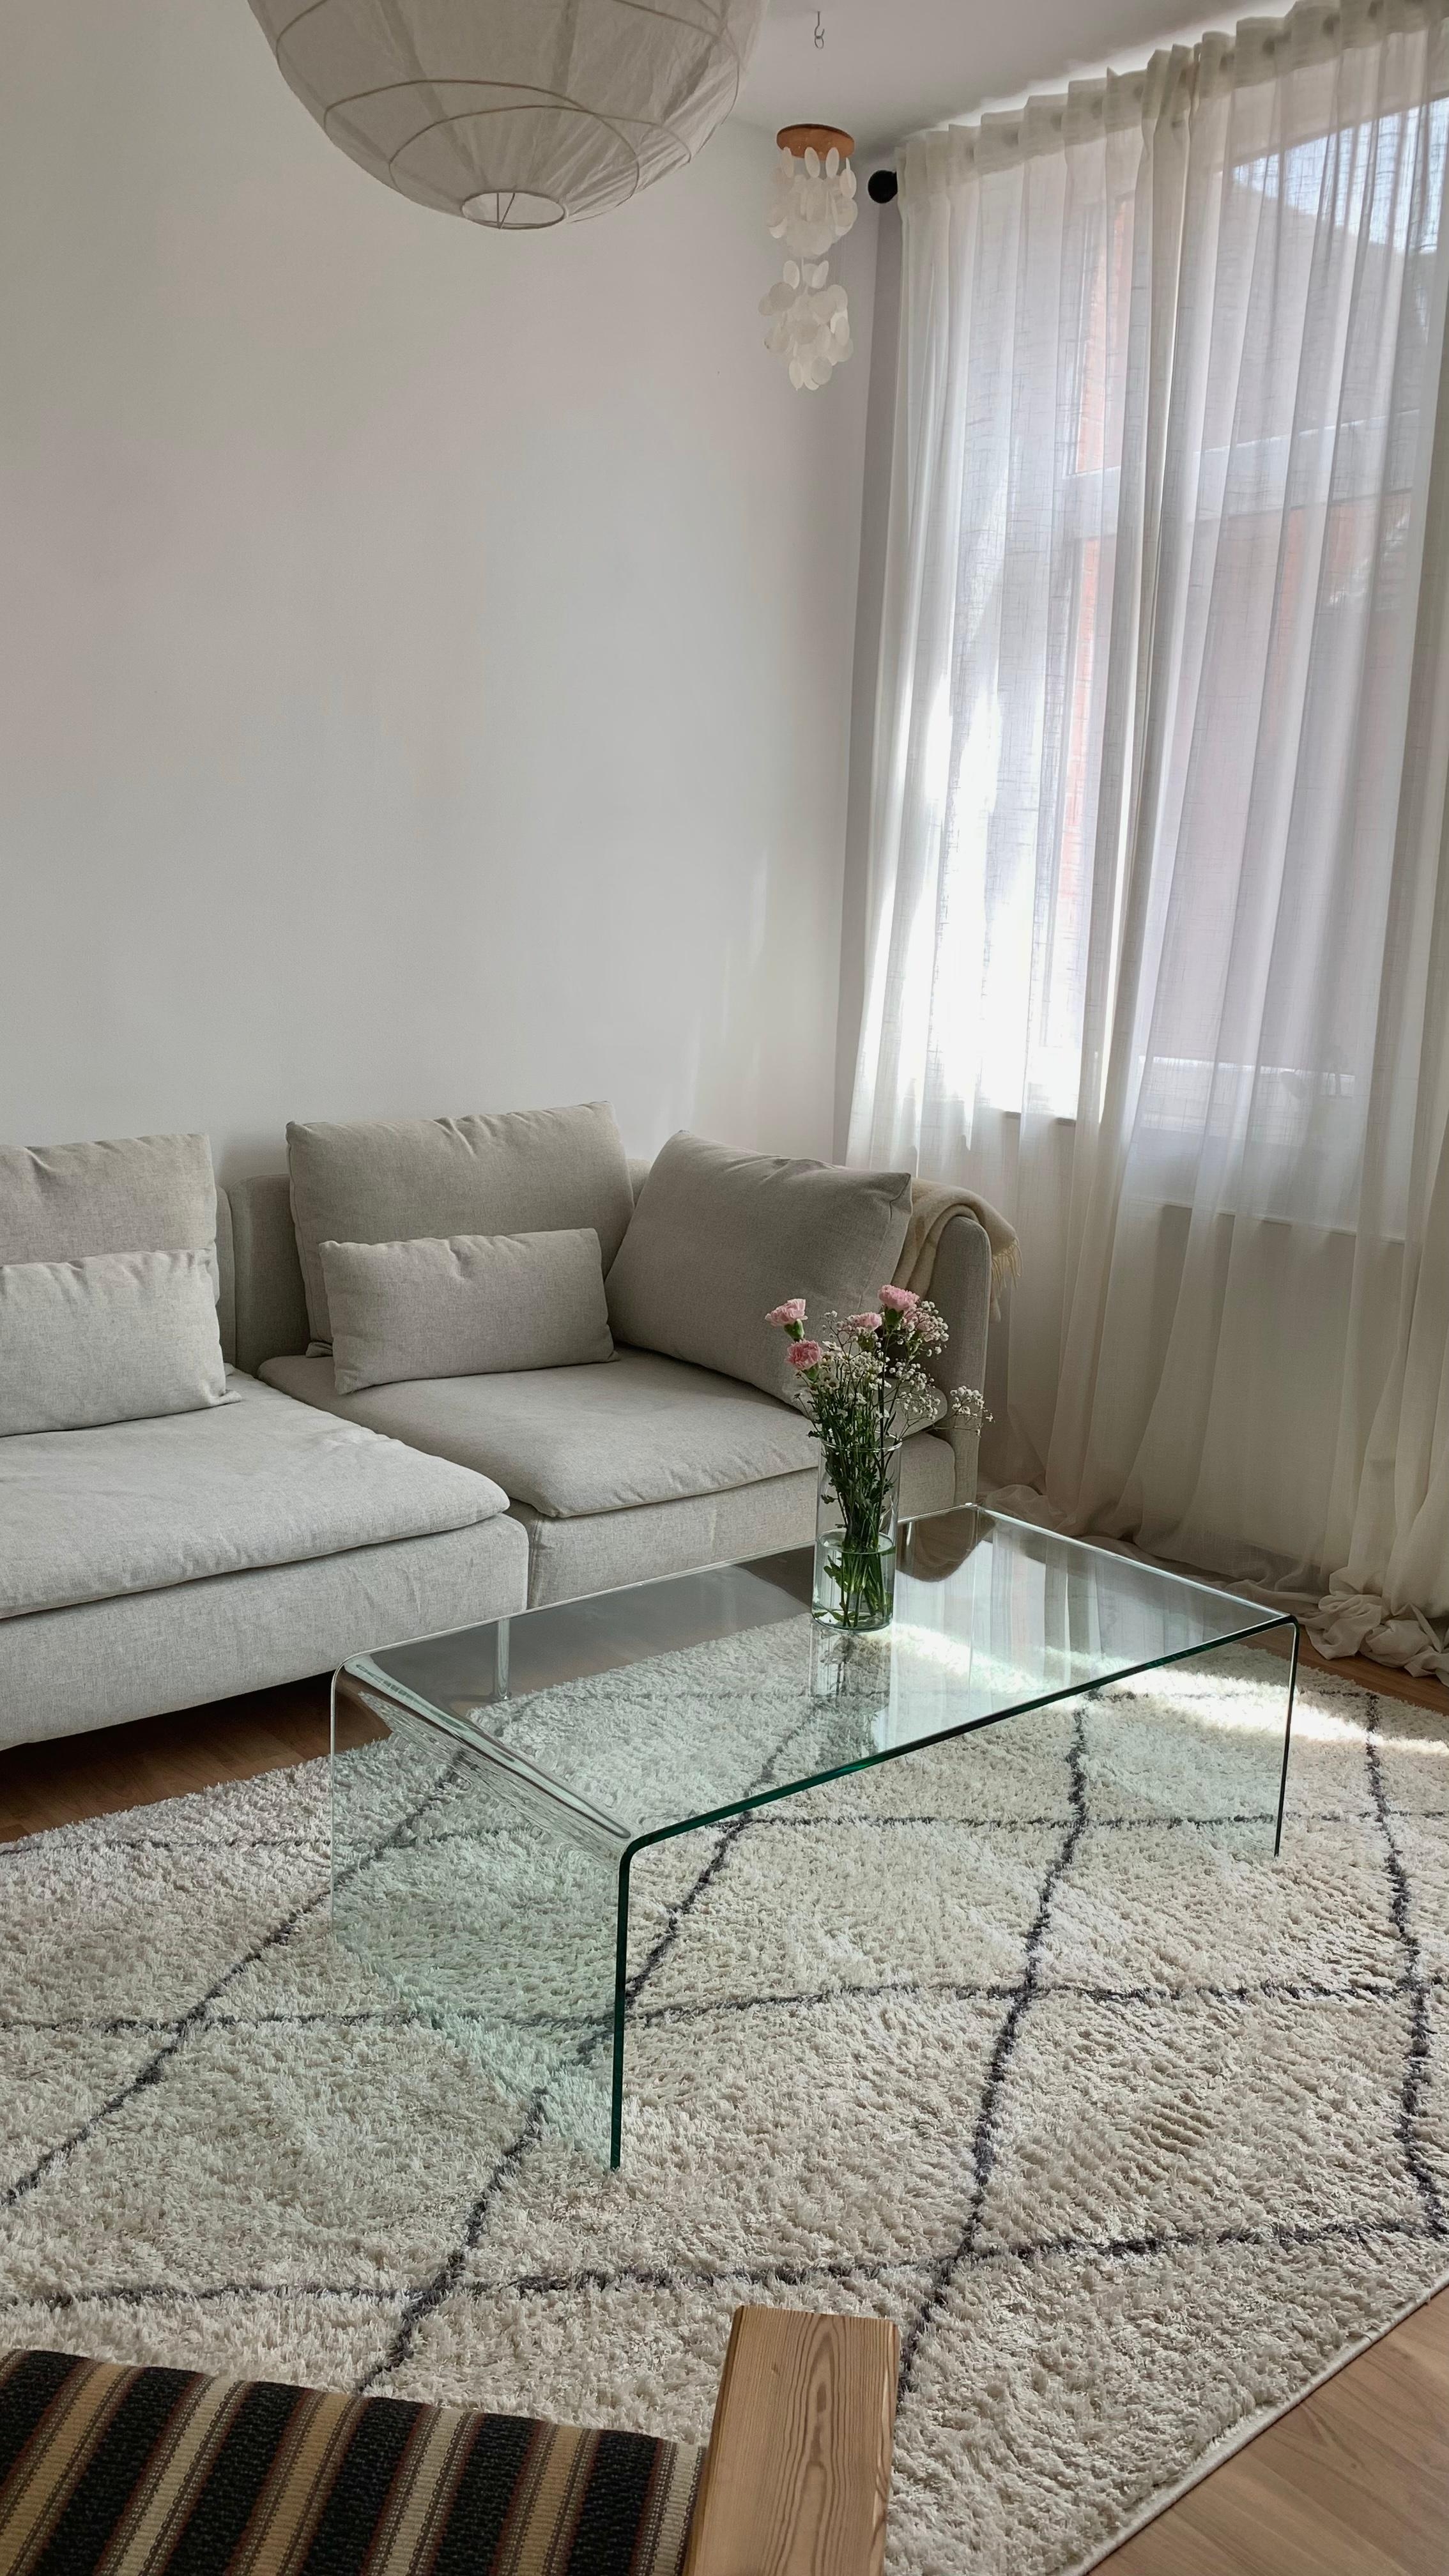 Mein absoluter Lieblingsplatz zum Lesen 🎧☕️📖 
#minimalismus #wohnzimmer #couch #söderhamn #ikea #glastisch 